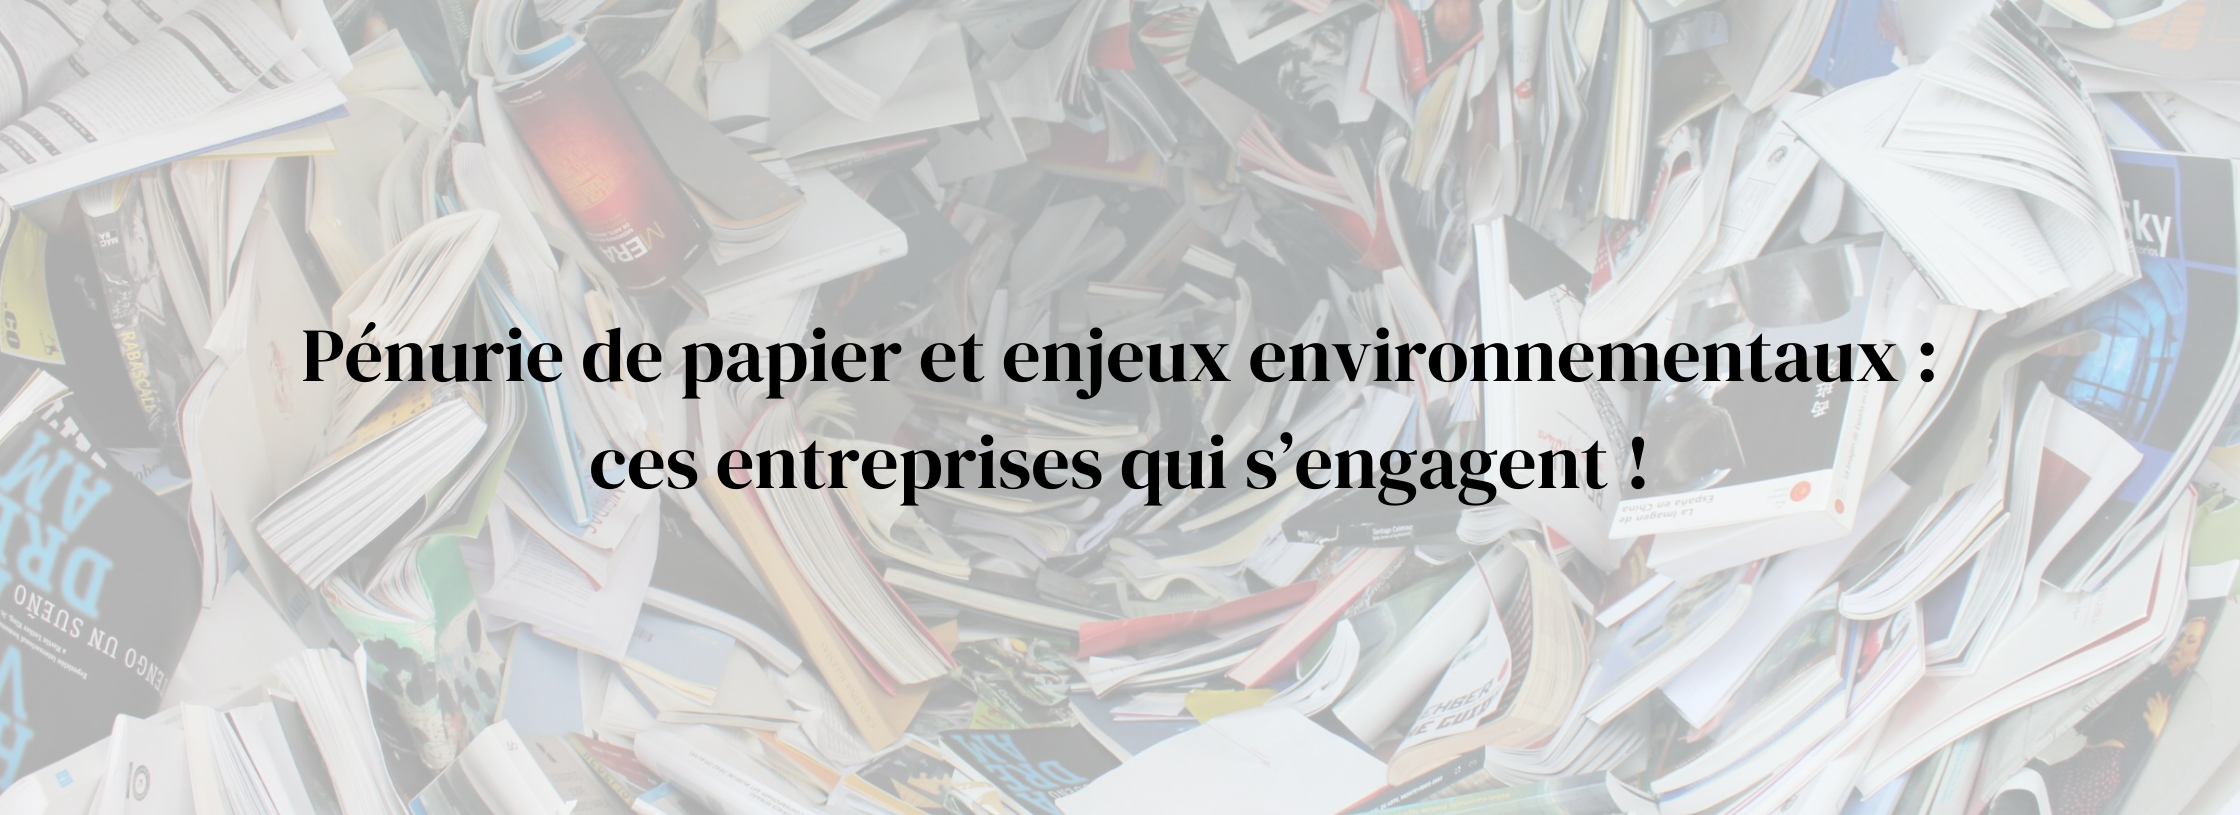 Pénurie de papier et enjeux environnementaux : ces entreprises qui s’engagent